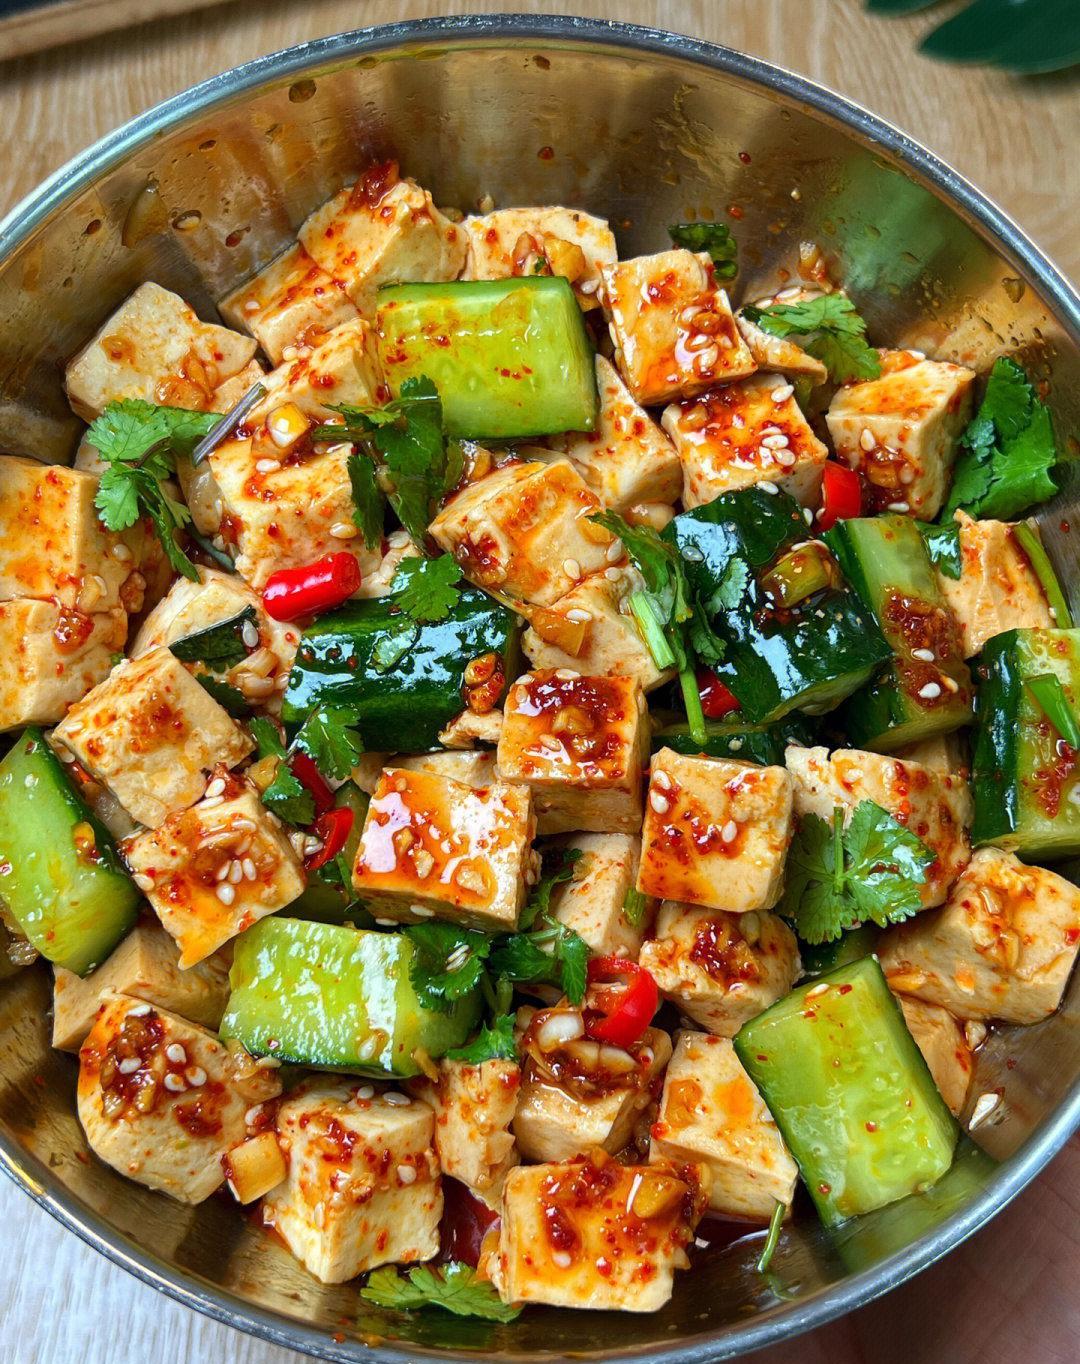 分享黄瓜炒干豆腐的做法，少油低脂，营养美味 - 哔哩哔哩